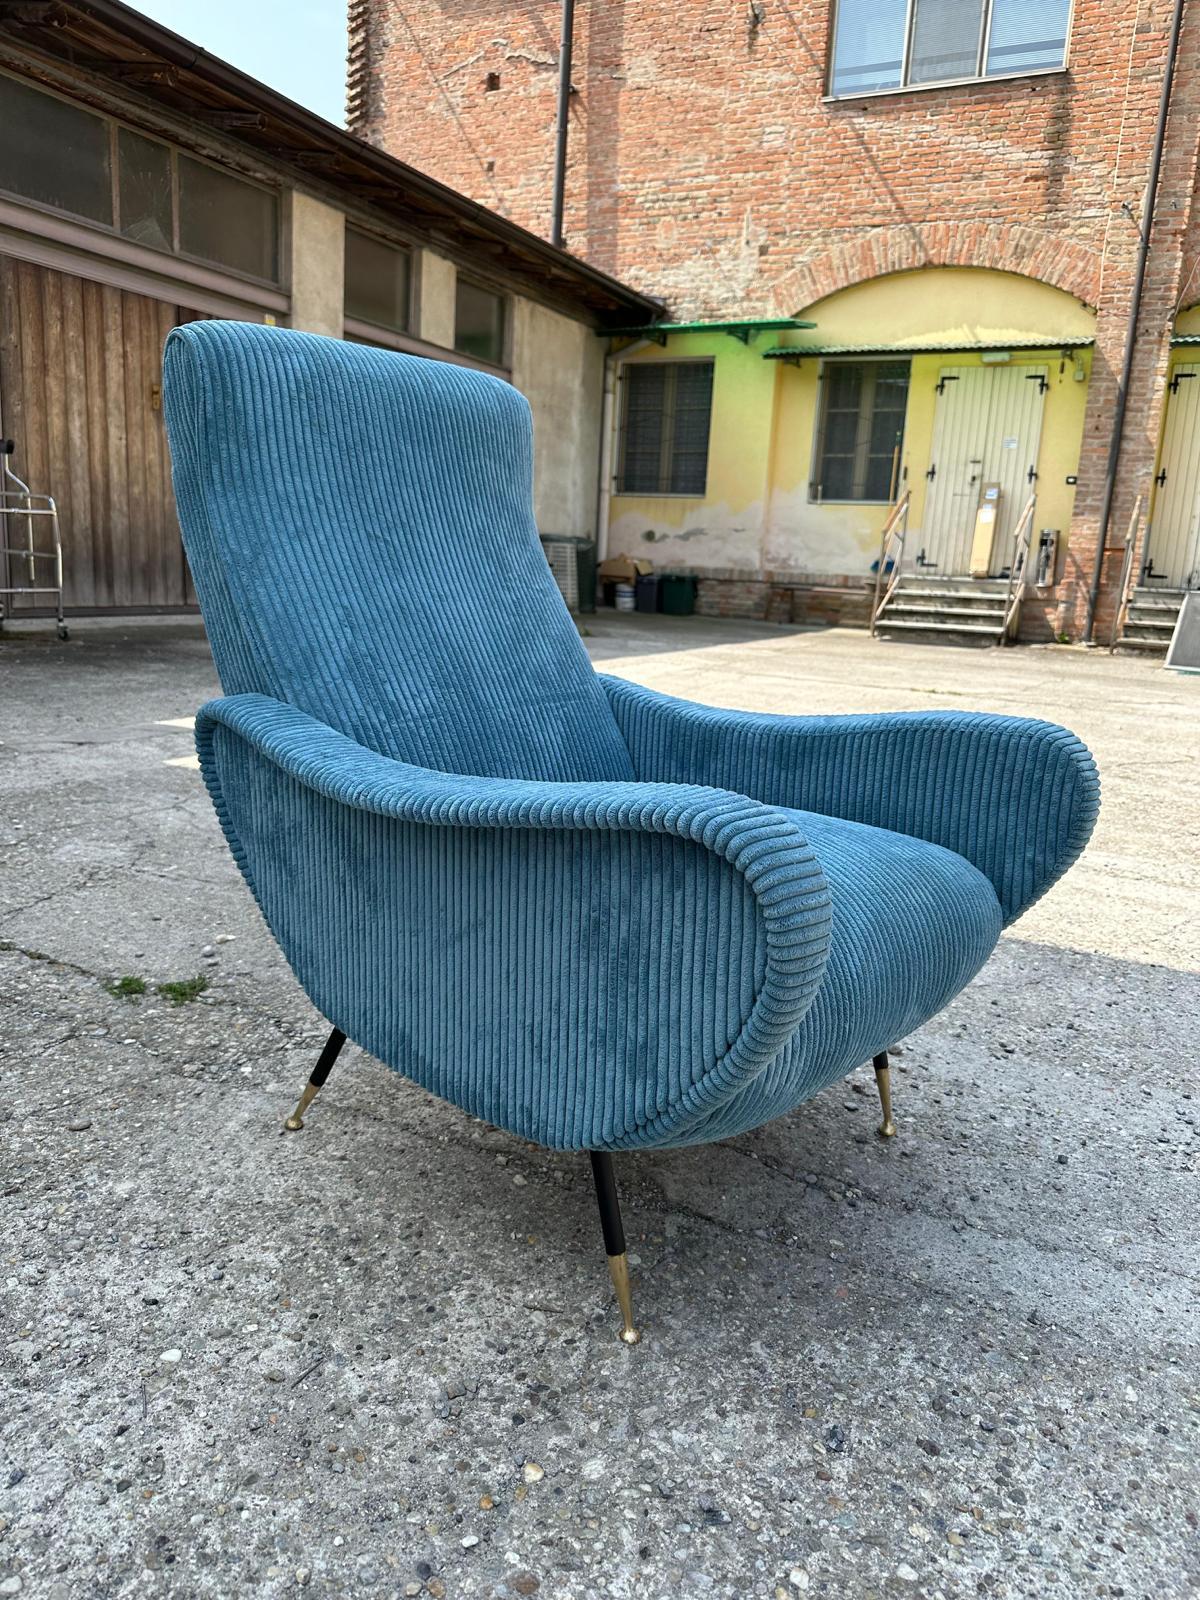 Italian Modern-mid century, set of 2 italian armchairs from the 50s-60s